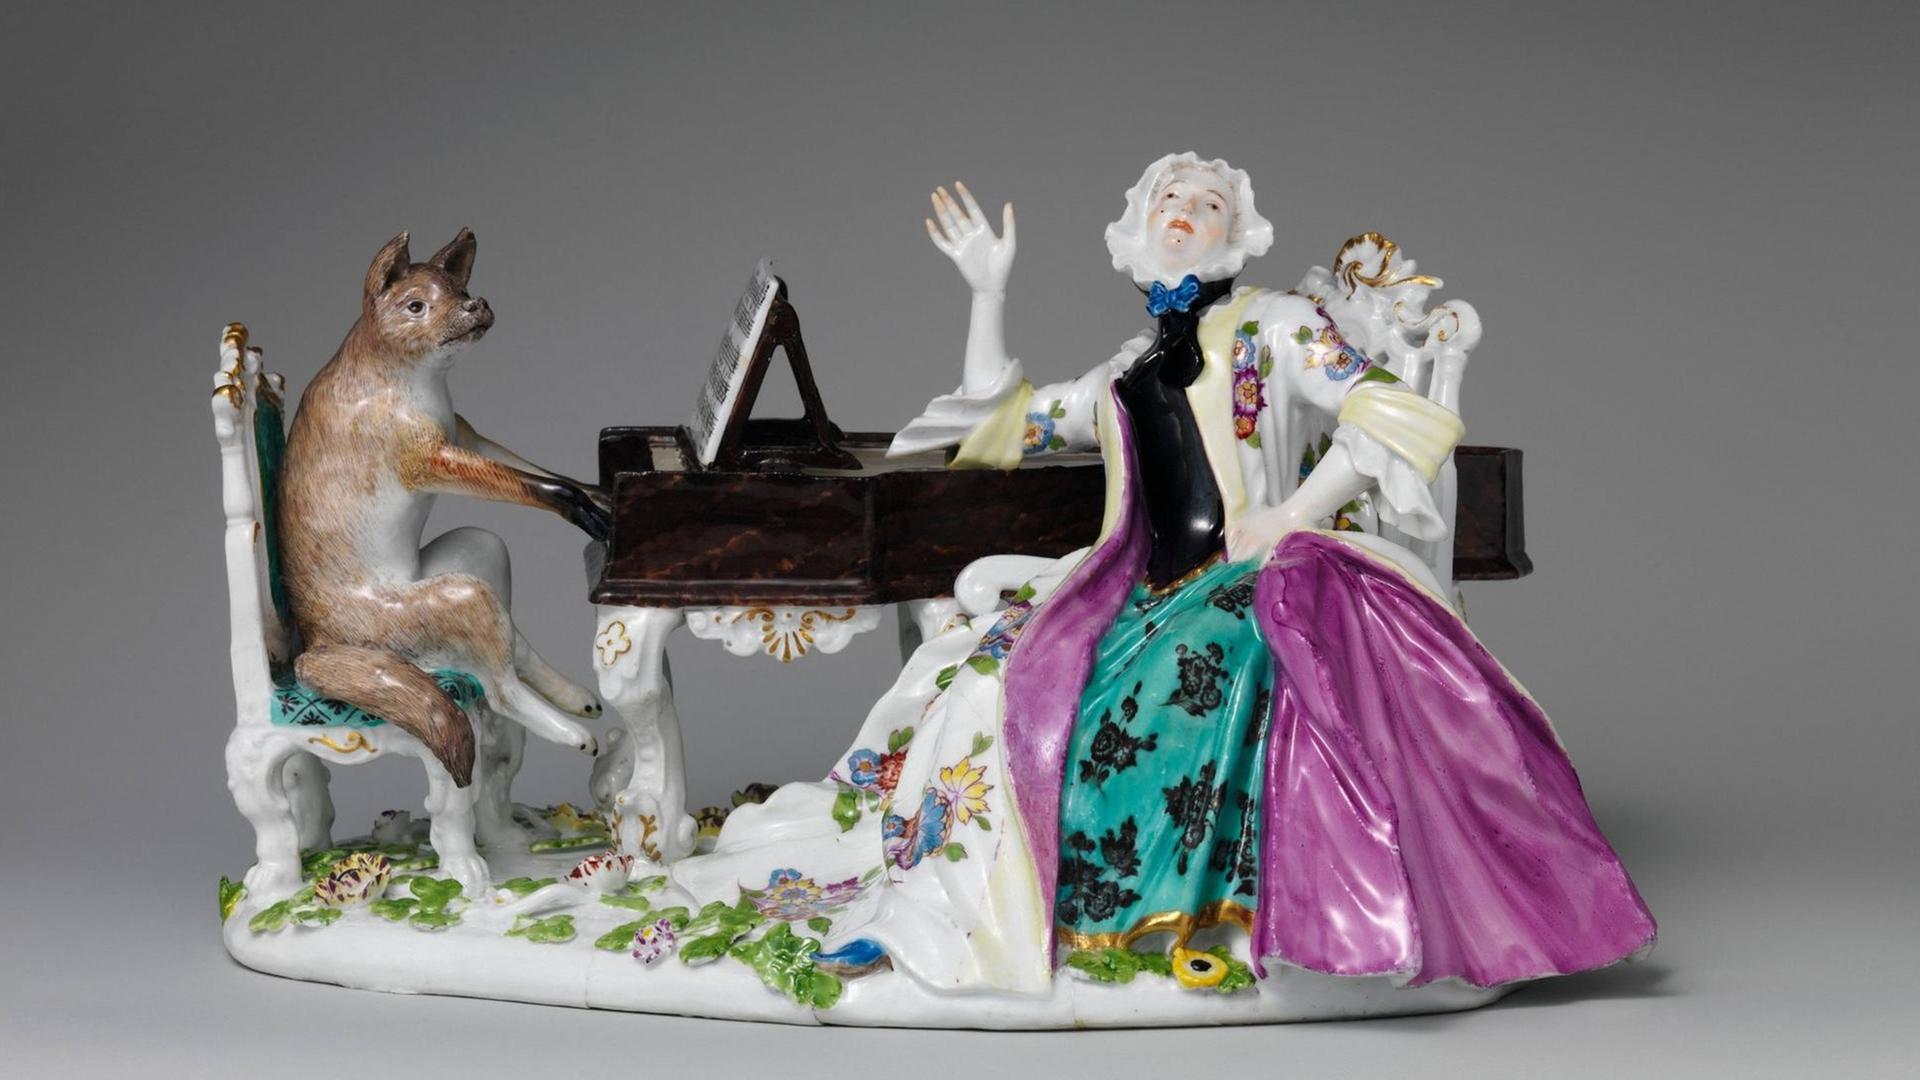 Eine Figurengruppe aus Porzellan zeigt eine barock gekleidete Frau neben einem Flügel sitzend, das Instrument wird von einem Fuchs gespielt.